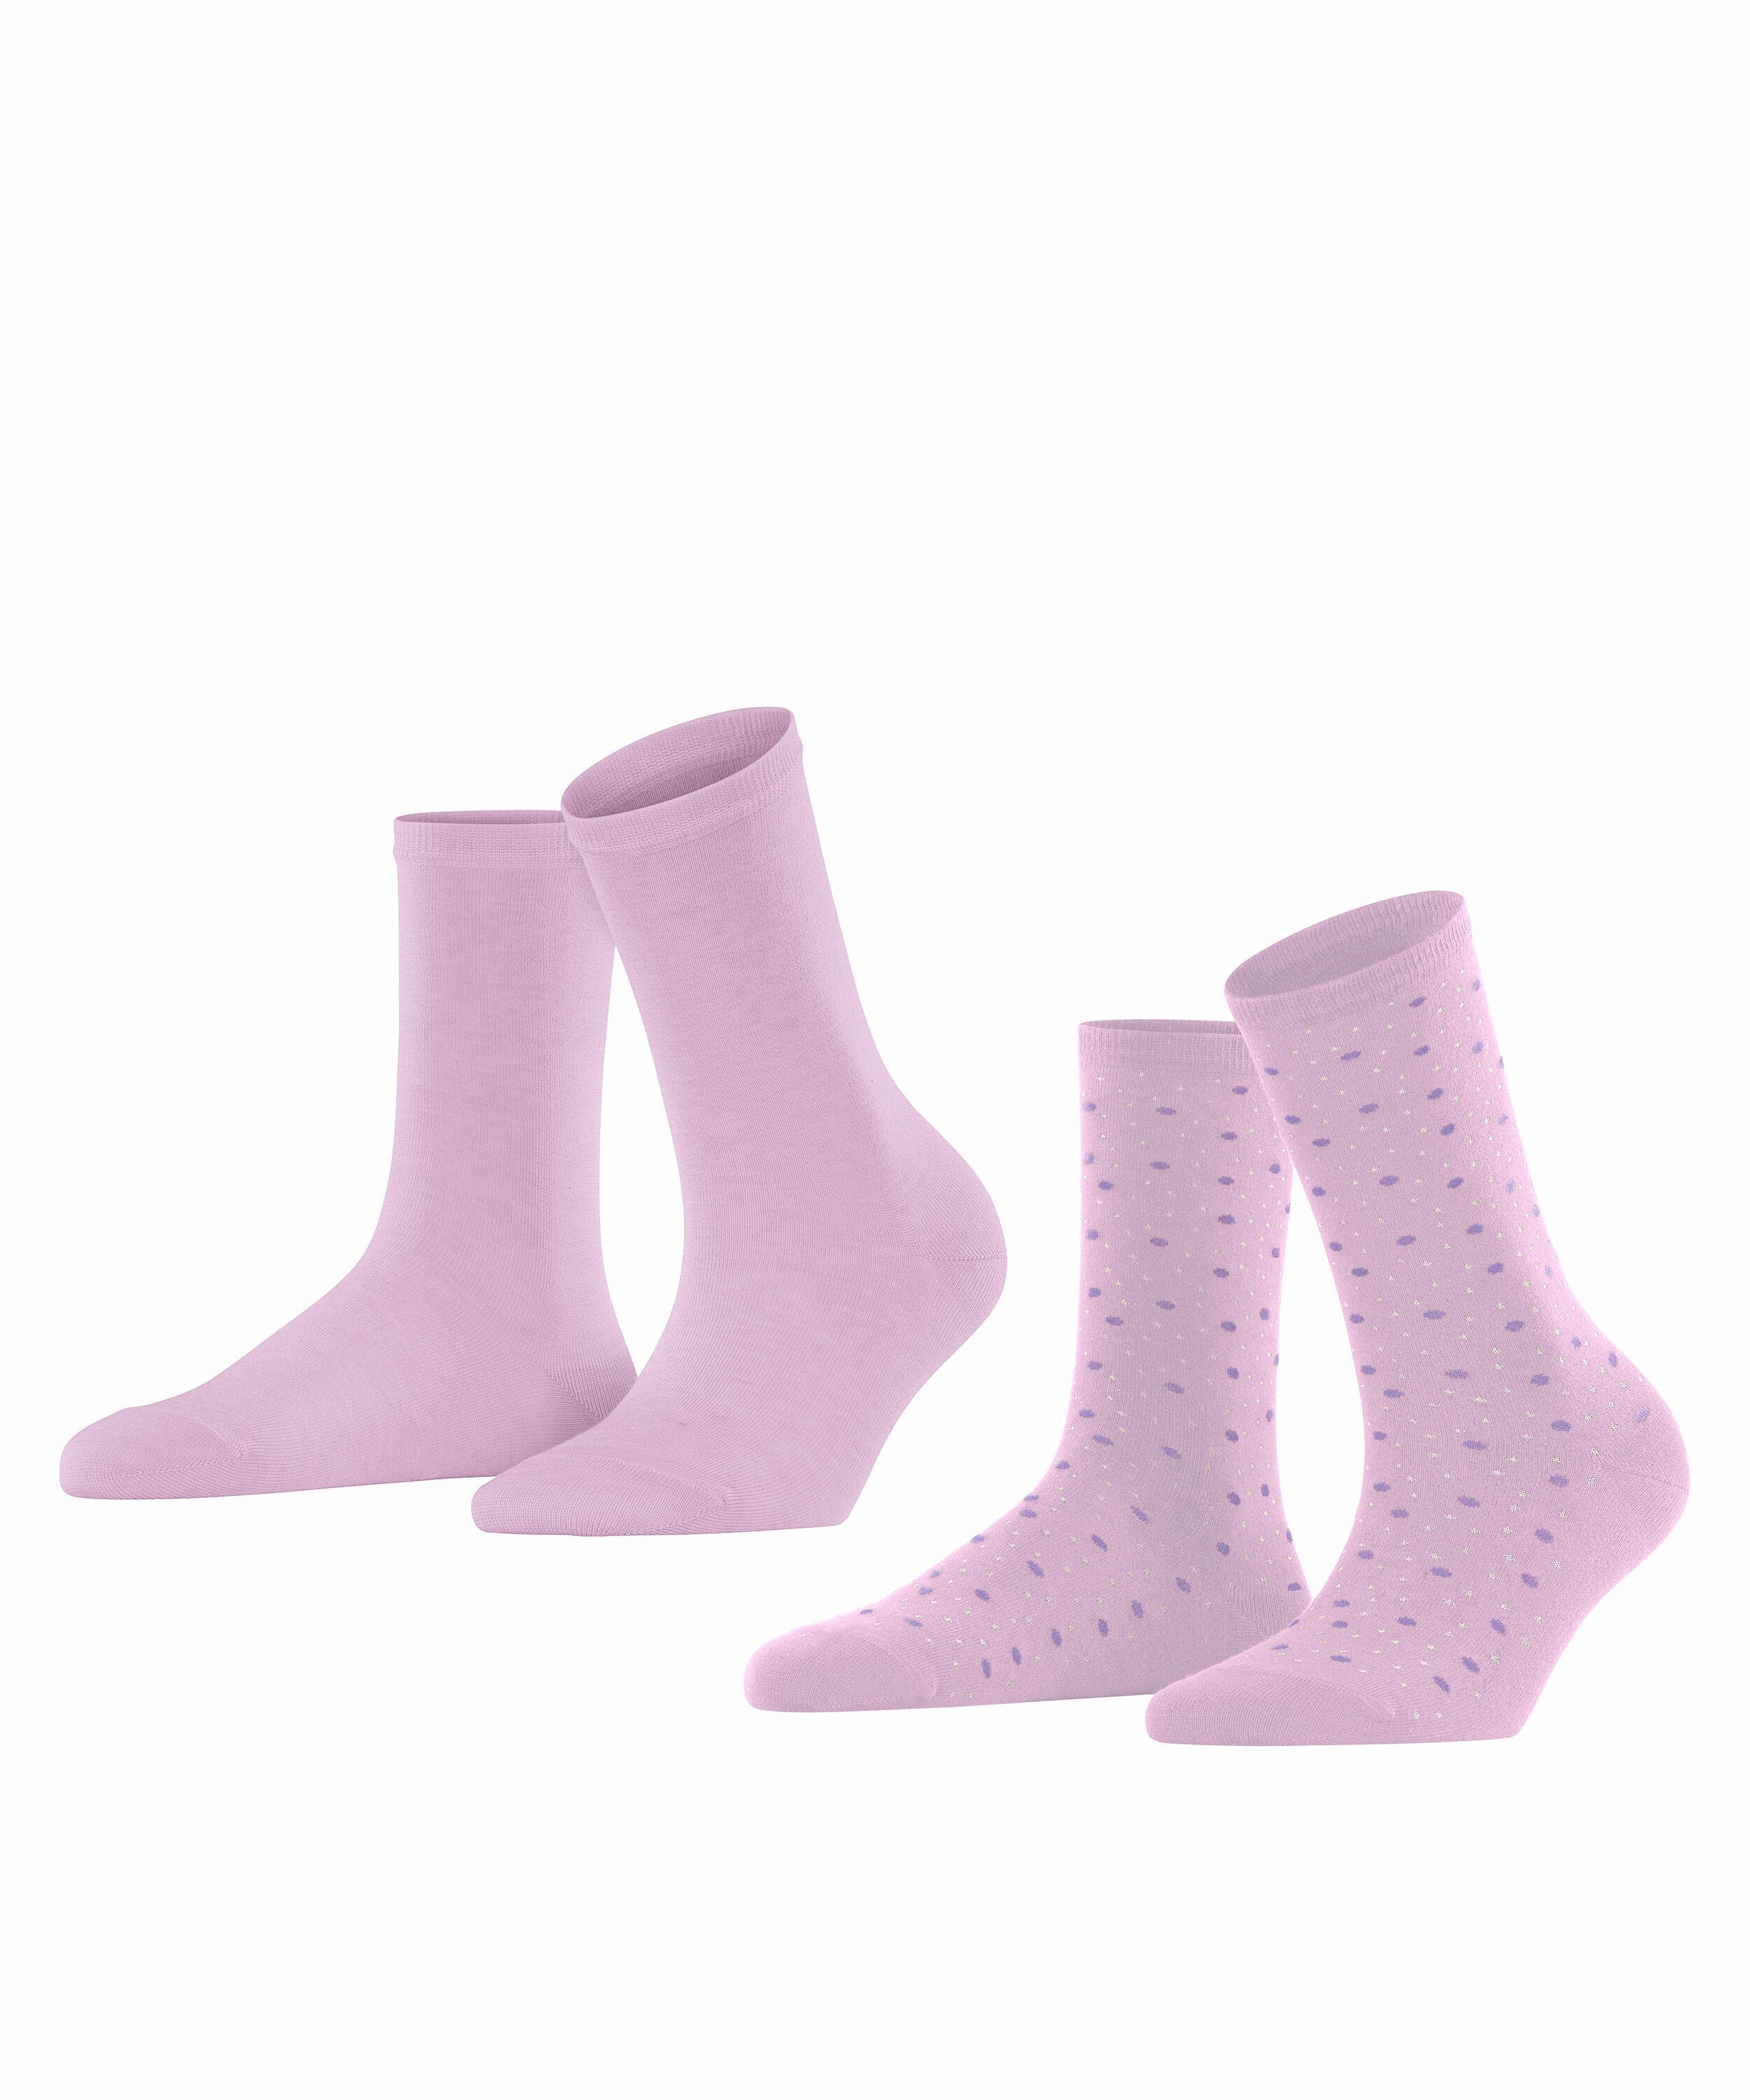 Esprit Socken Playful Dot lupine (8299) 2-Pack (2-Paar)